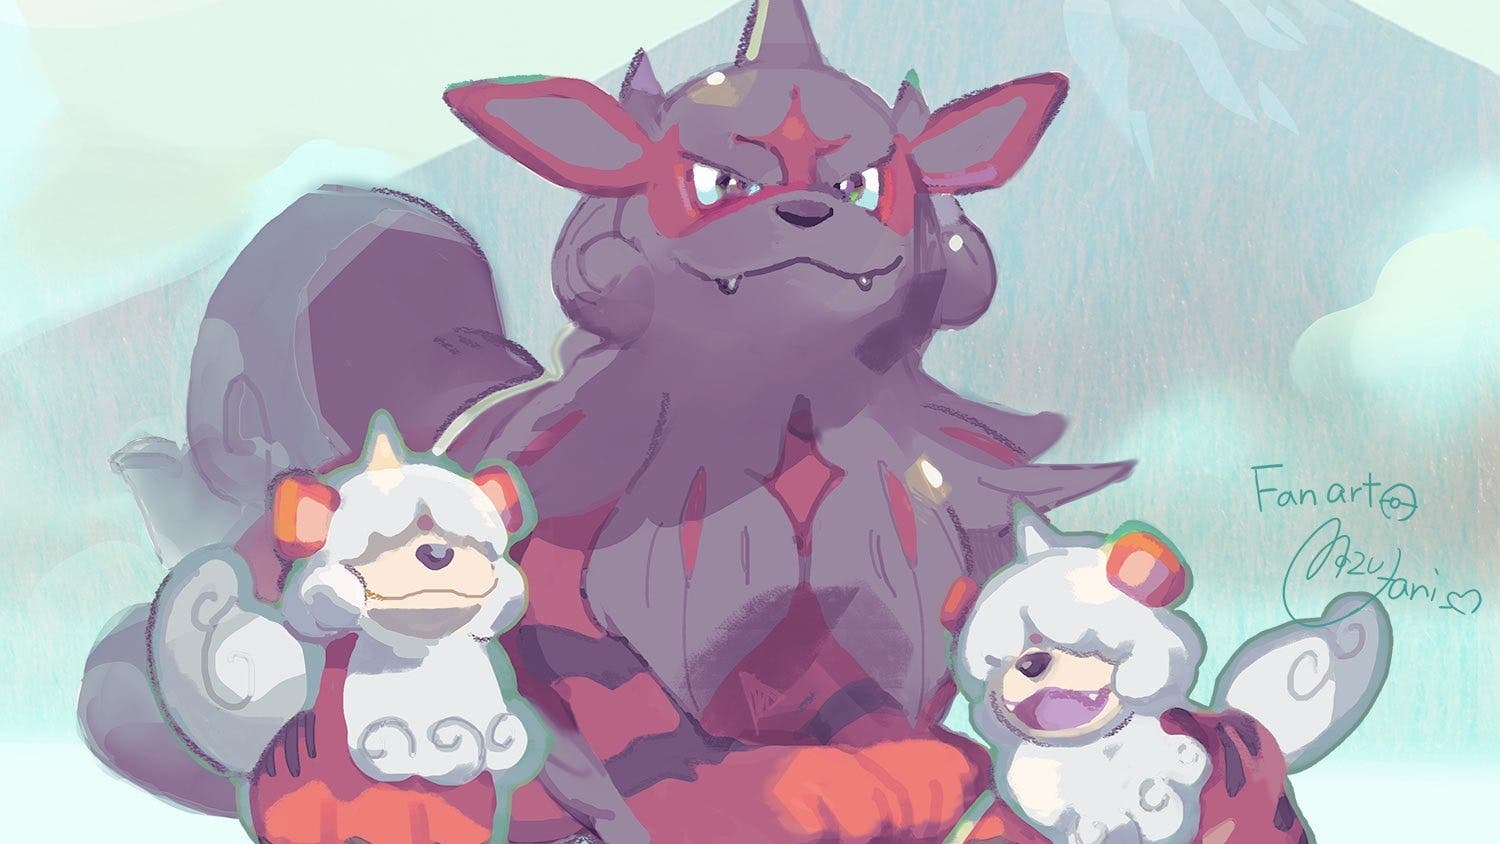 Pokémon GO: Cómo obtener a Growlithe de Hisui y su versión Shiny